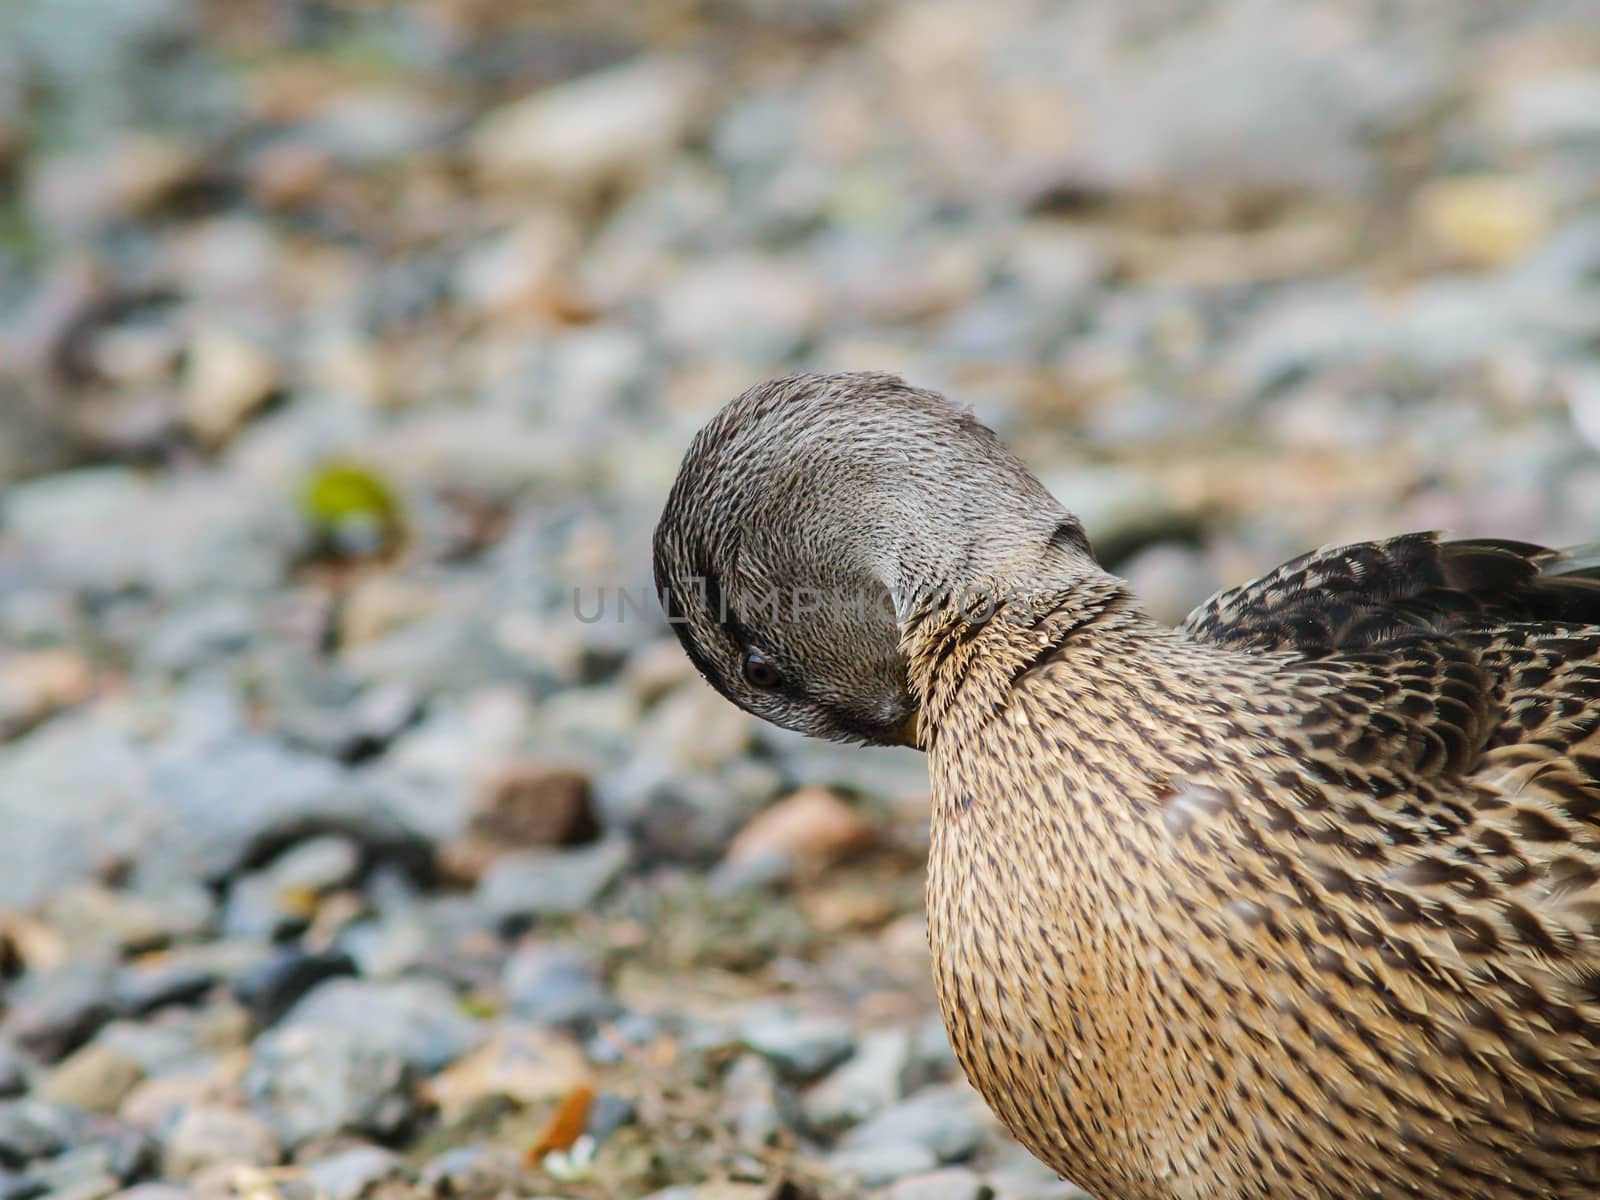 Female mallard duck by Arvebettum